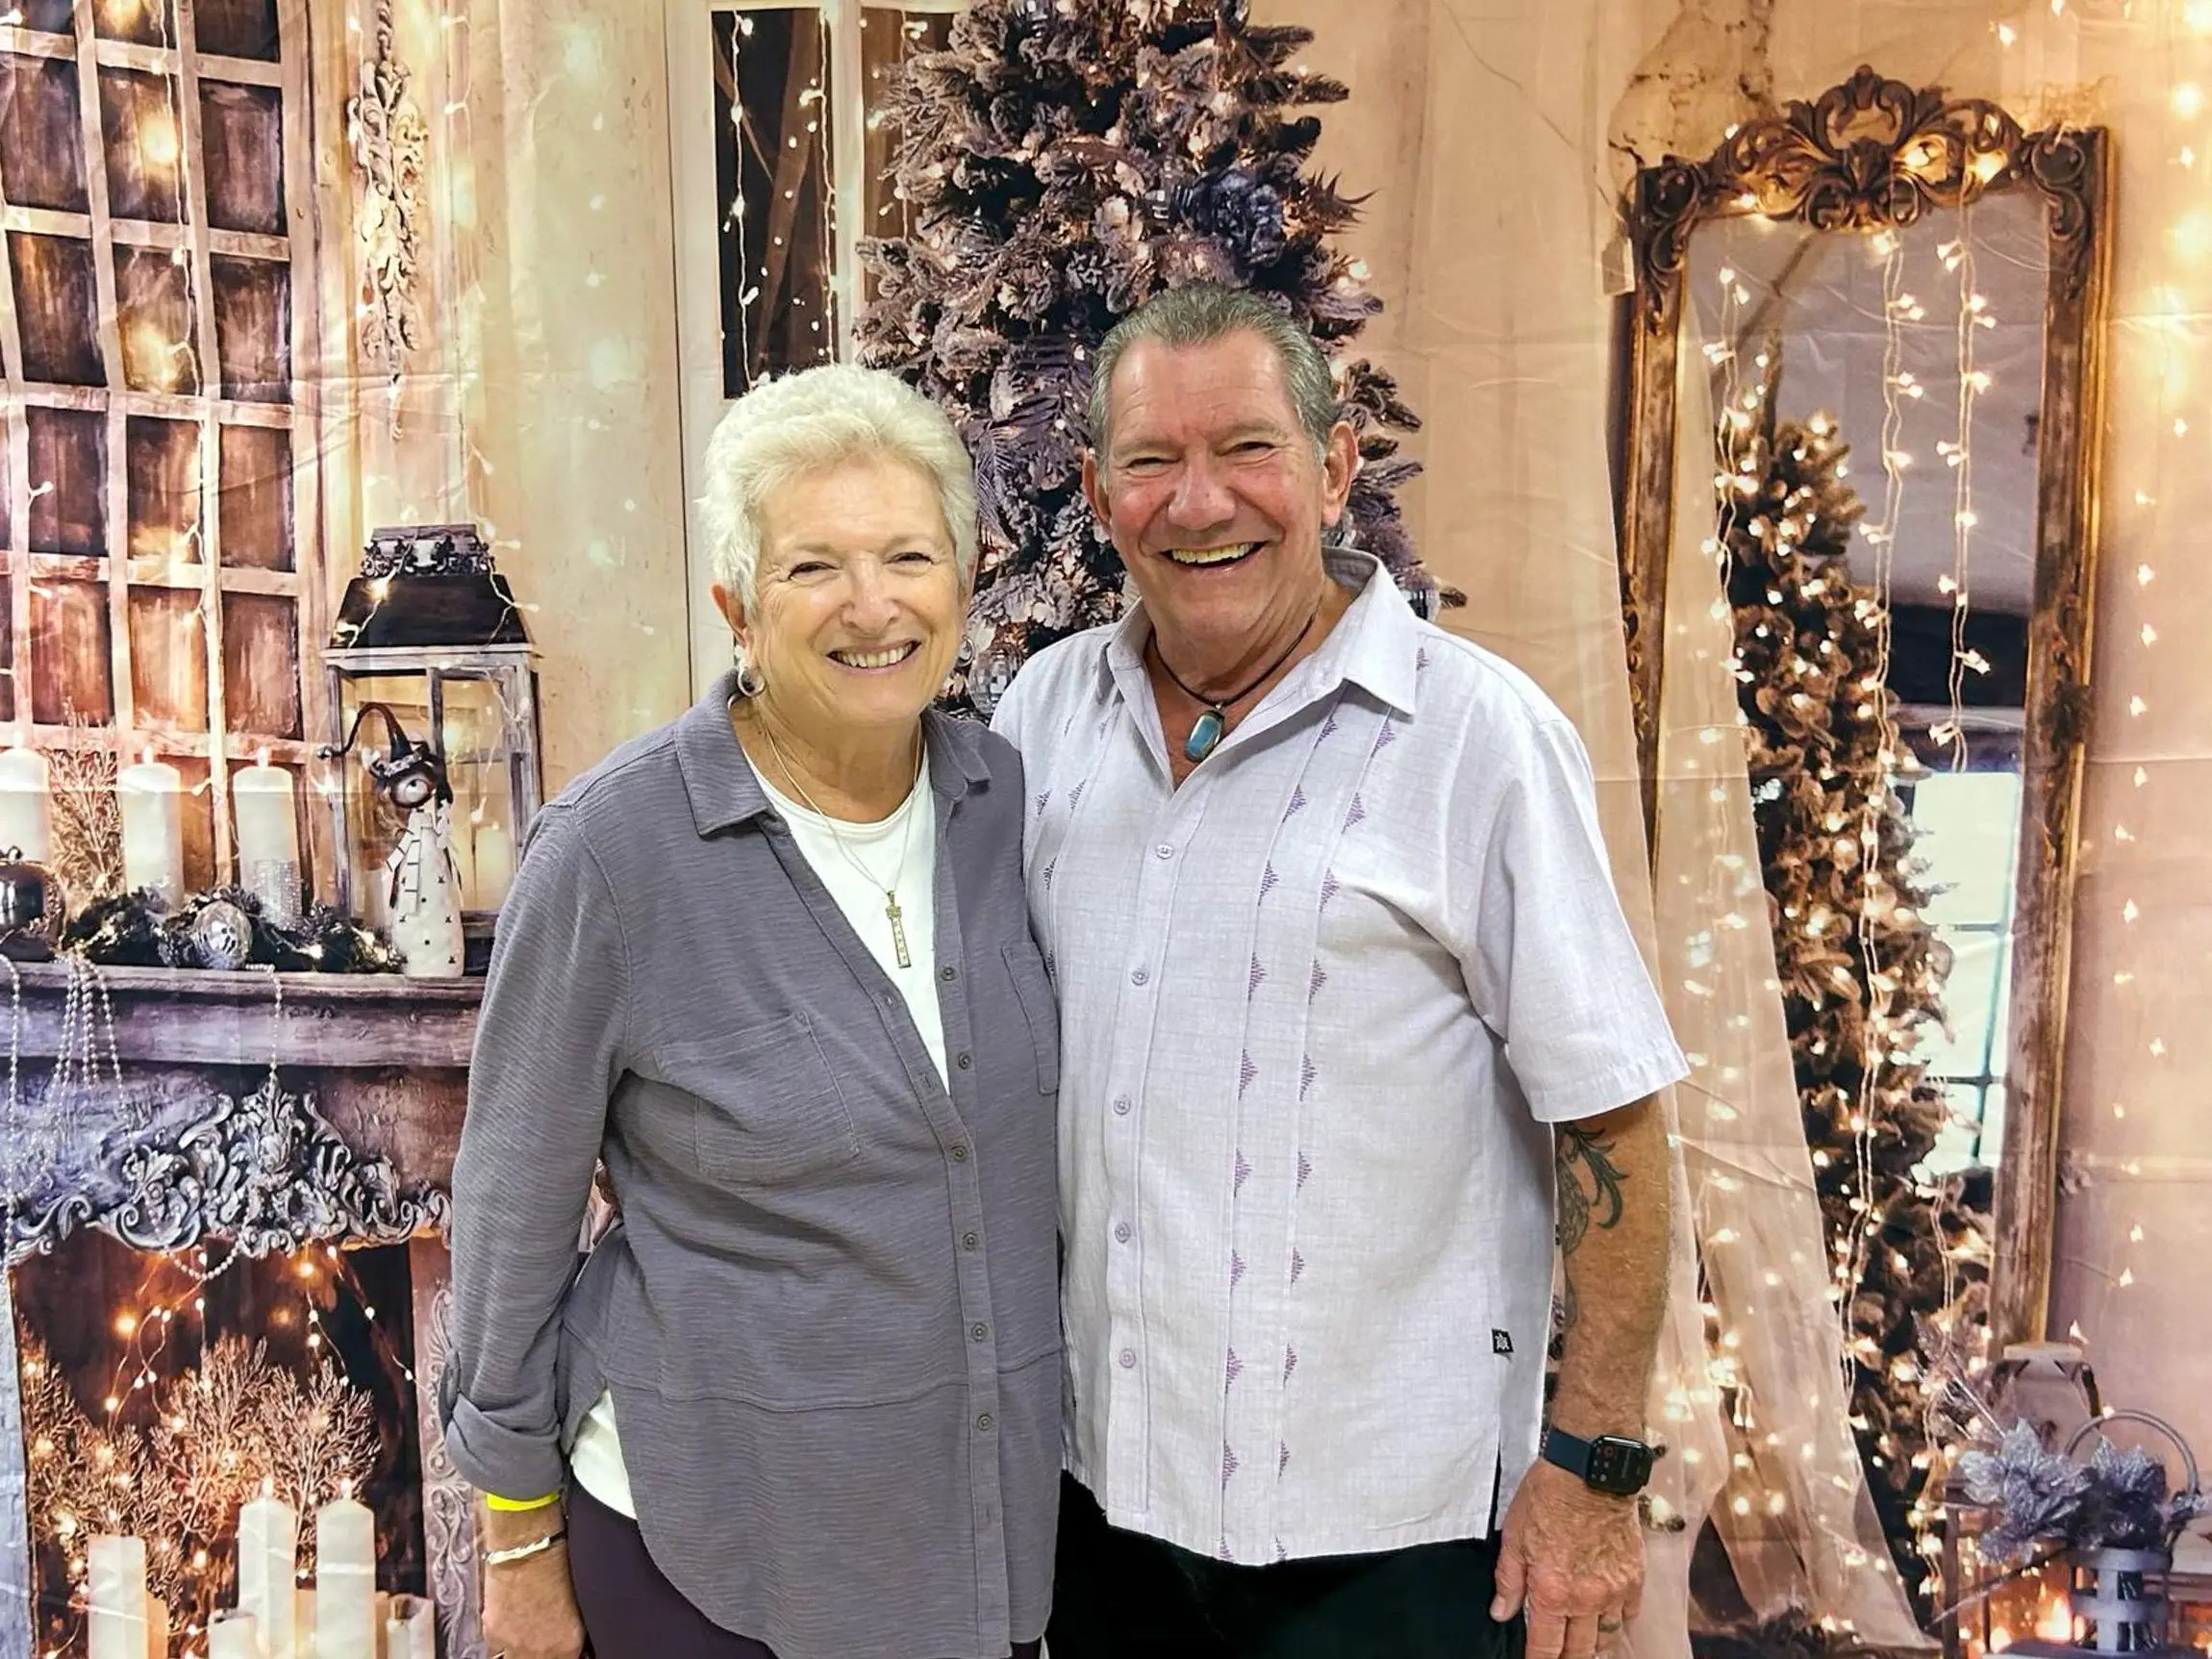 Tras pagar un depósito por un camarote, Carol Plaut (izquierda), de 77 años, y su marido Bill Plaut (derecha), de 77, esperaban que navegar en el Victoria Majestic fuera su "último gran viaje".